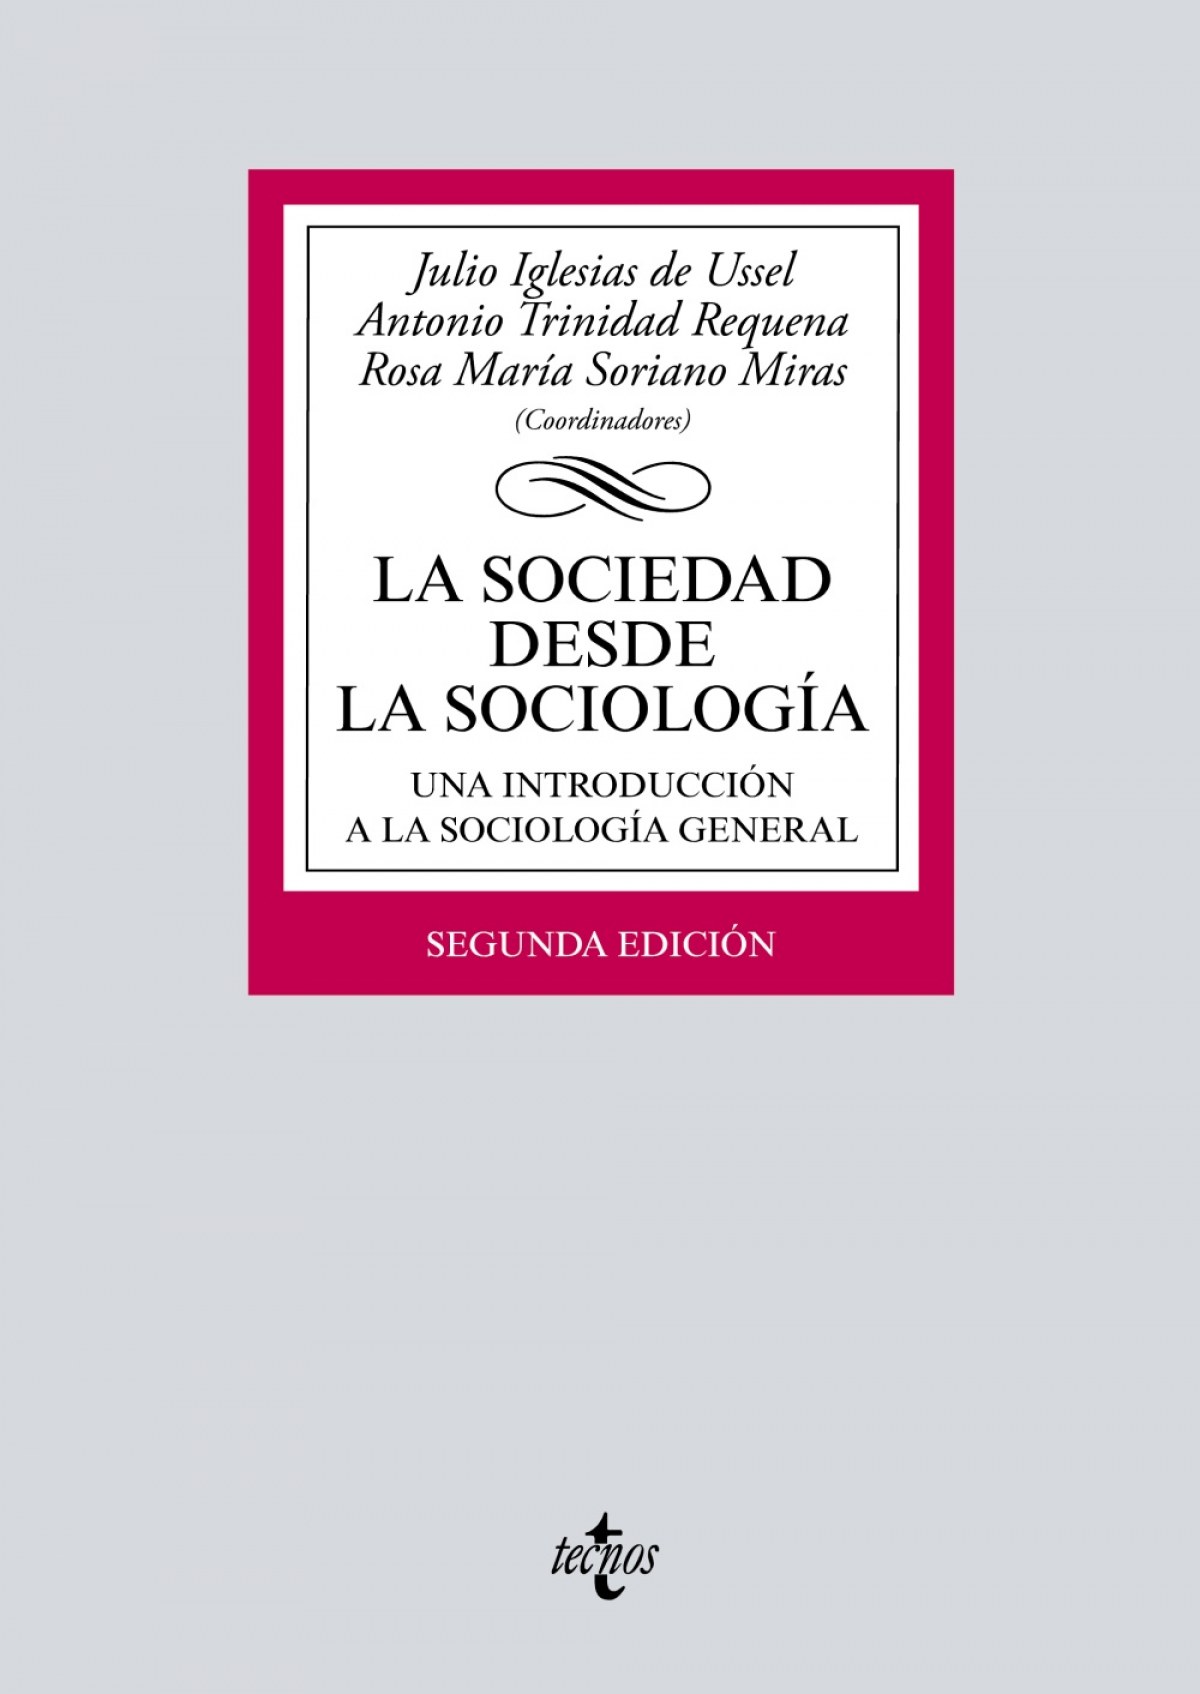 LA SOCIEDAD DESDE LA SOCIOLOGÍA Una introducción a la sociolog¡a gener - Iglesias De Ussel, Julio/Trinidad Requena, Antonio